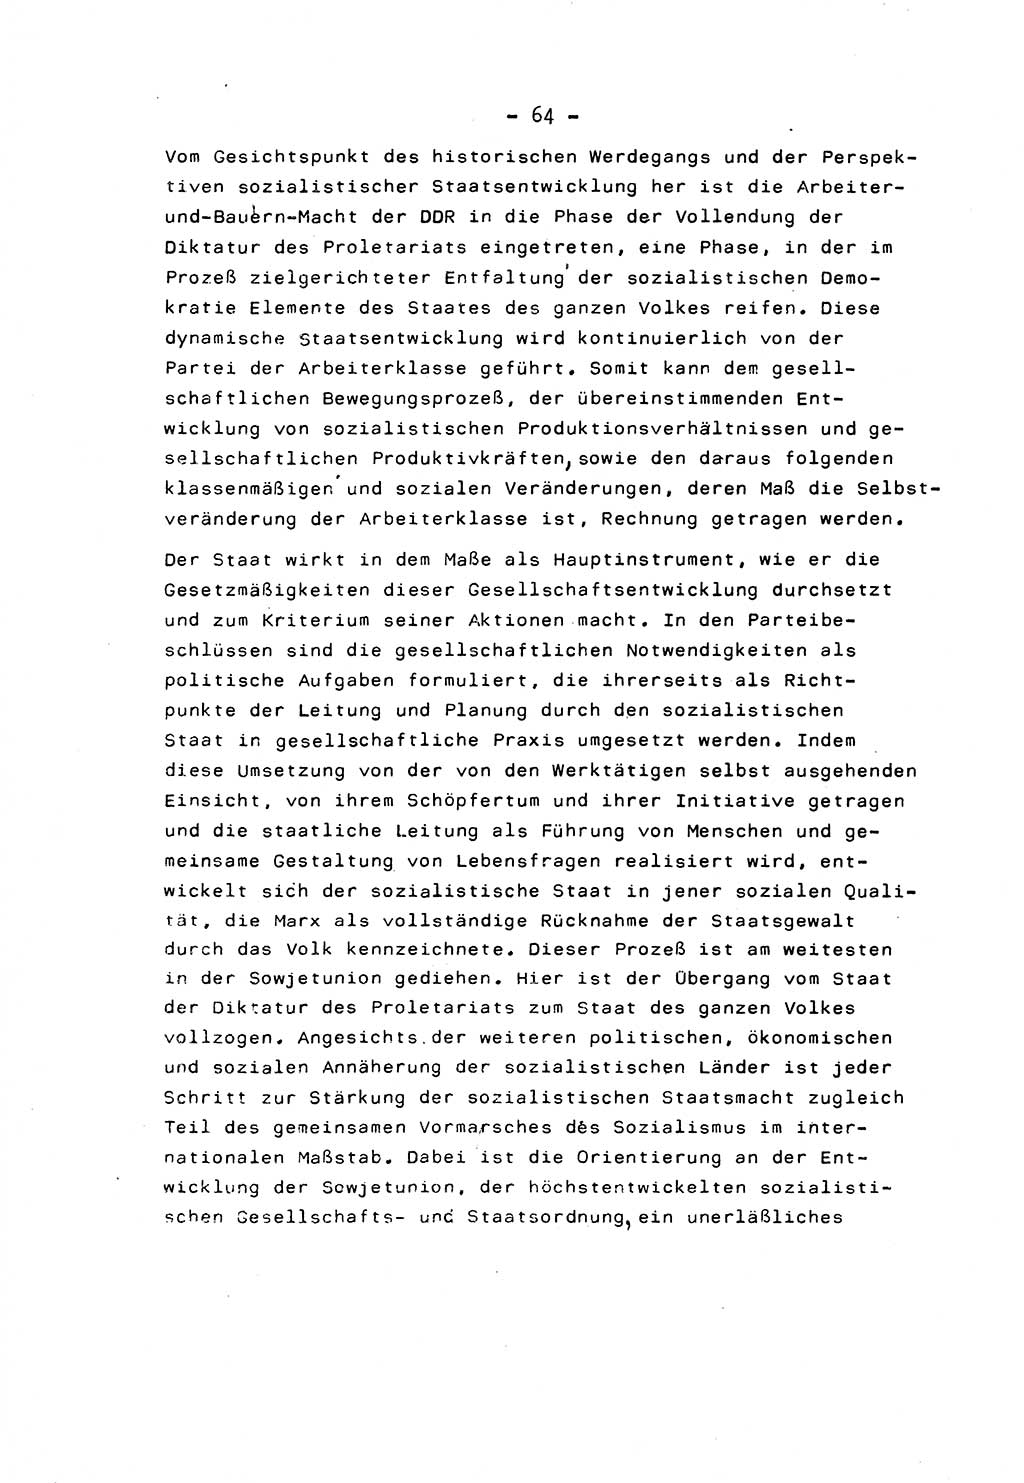 Marxistisch-leninistische Staats- und Rechtstheorie [Deutsche Demokratische Republik (DDR)] 1975, Seite 64 (ML St.-R.-Th. DDR 1975, S. 64)